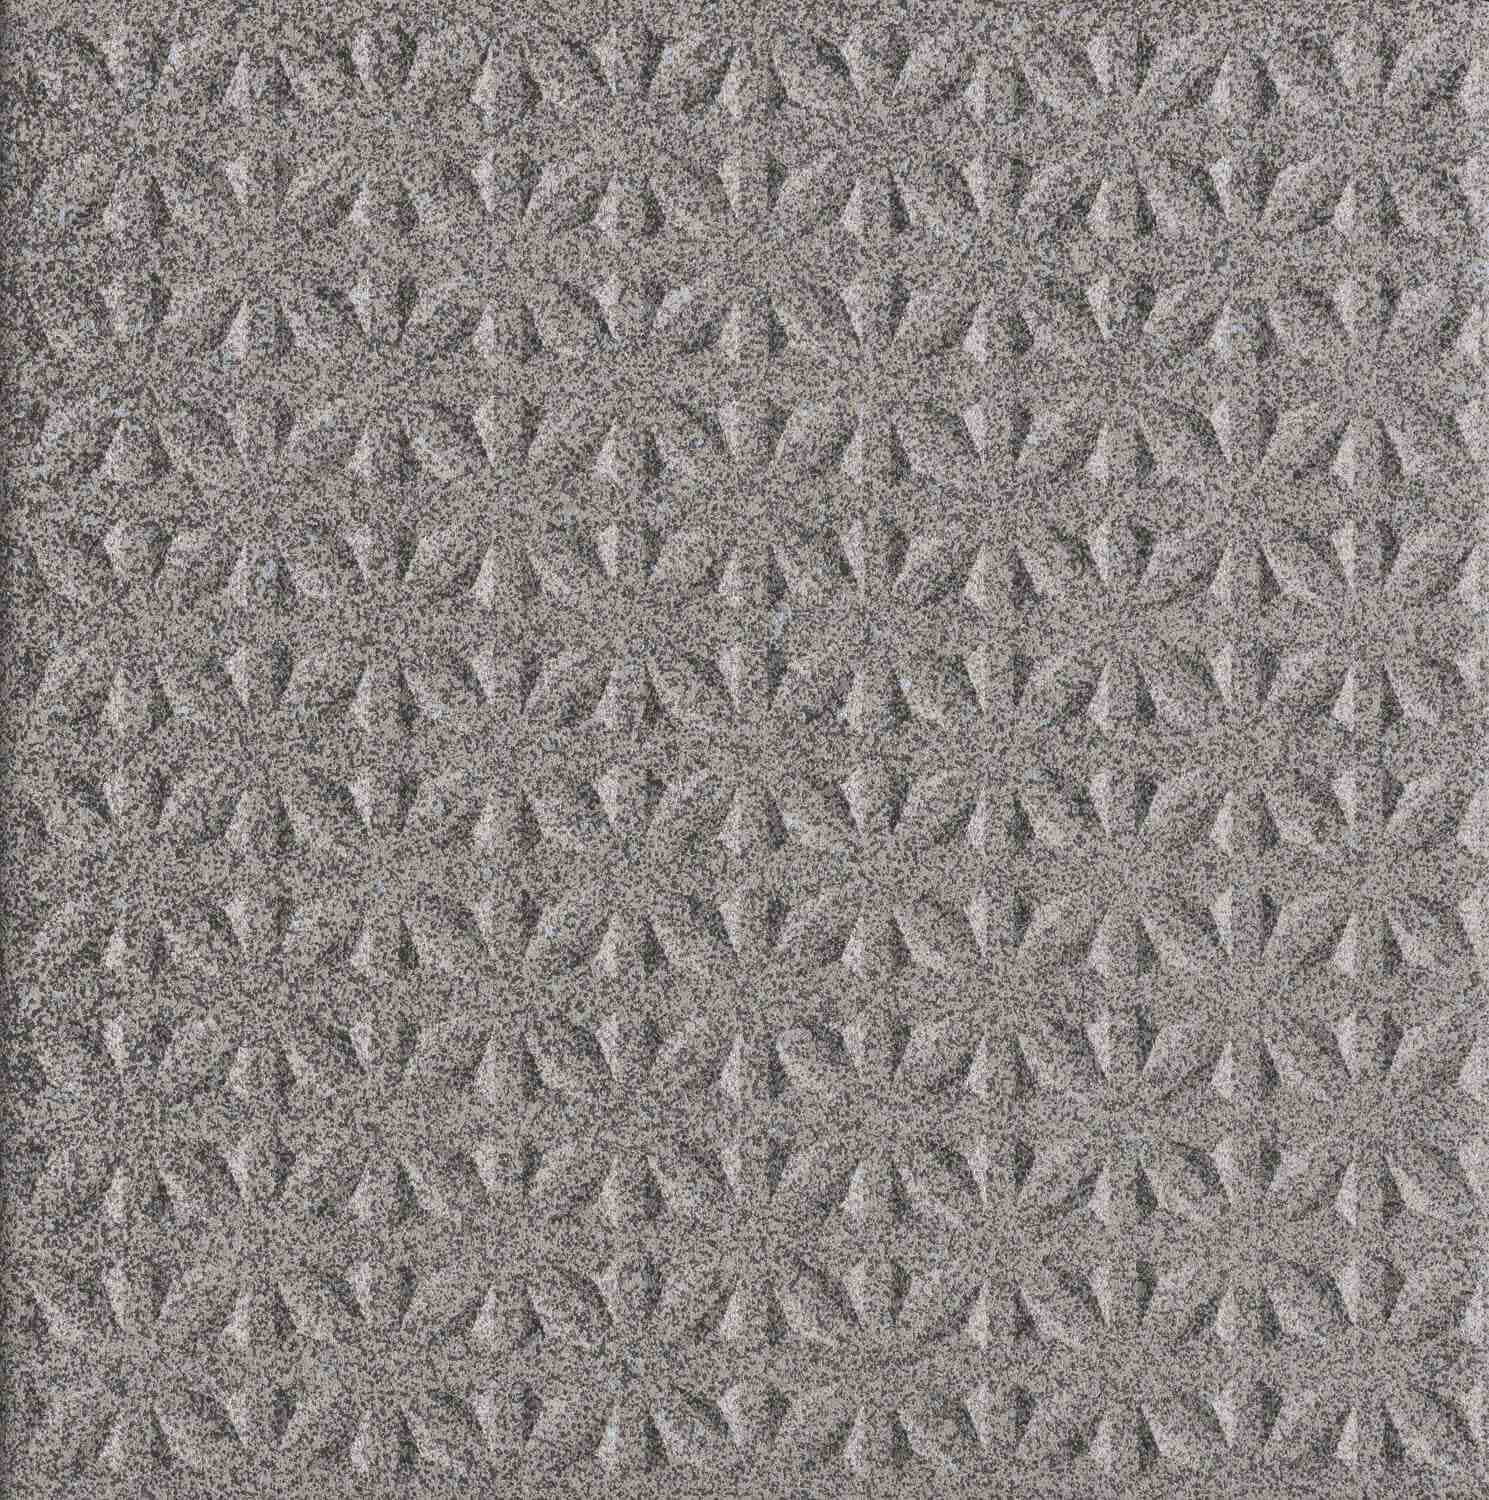 Dorset Woolliscroft Tetra Dark Grey Slip Resistant Quarry Tile 148x148mm